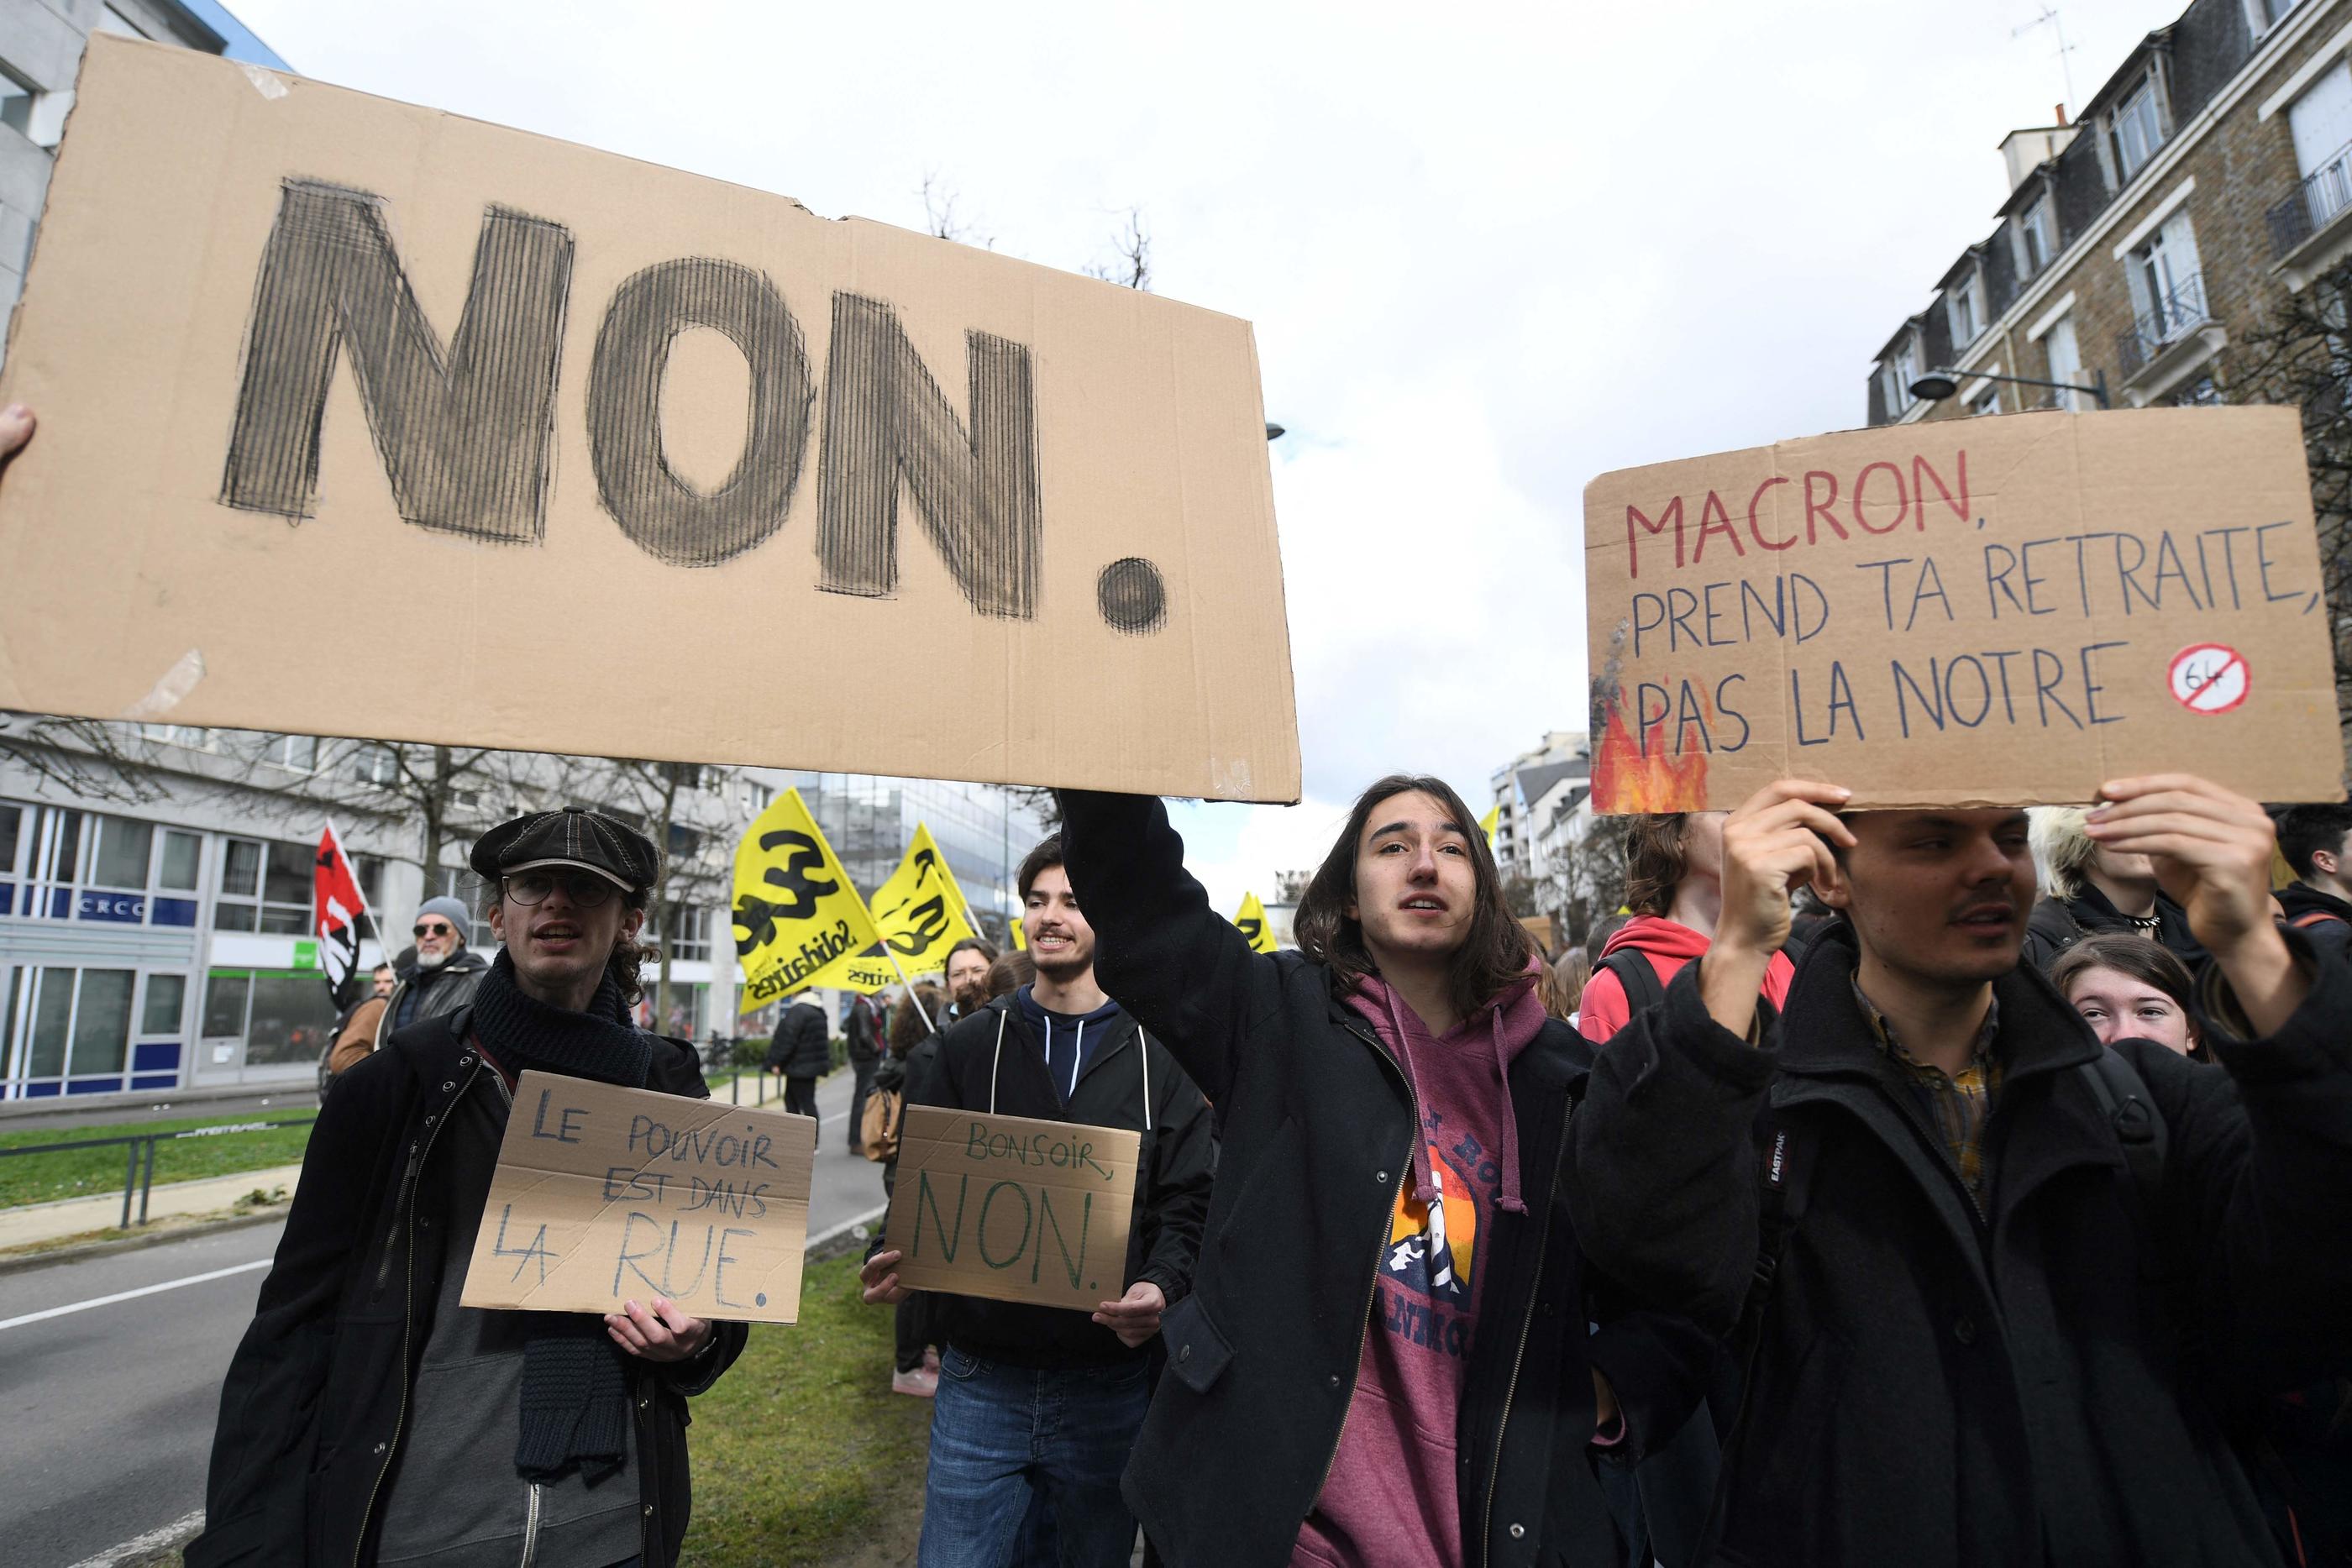 Le président Emmanuel Macron fait face à des accusations de comportement antidémocratique après avoir fait adopter la réforme des retraites sans vote parlementaire. JEAN-FRANCOIS MONIER / AFP